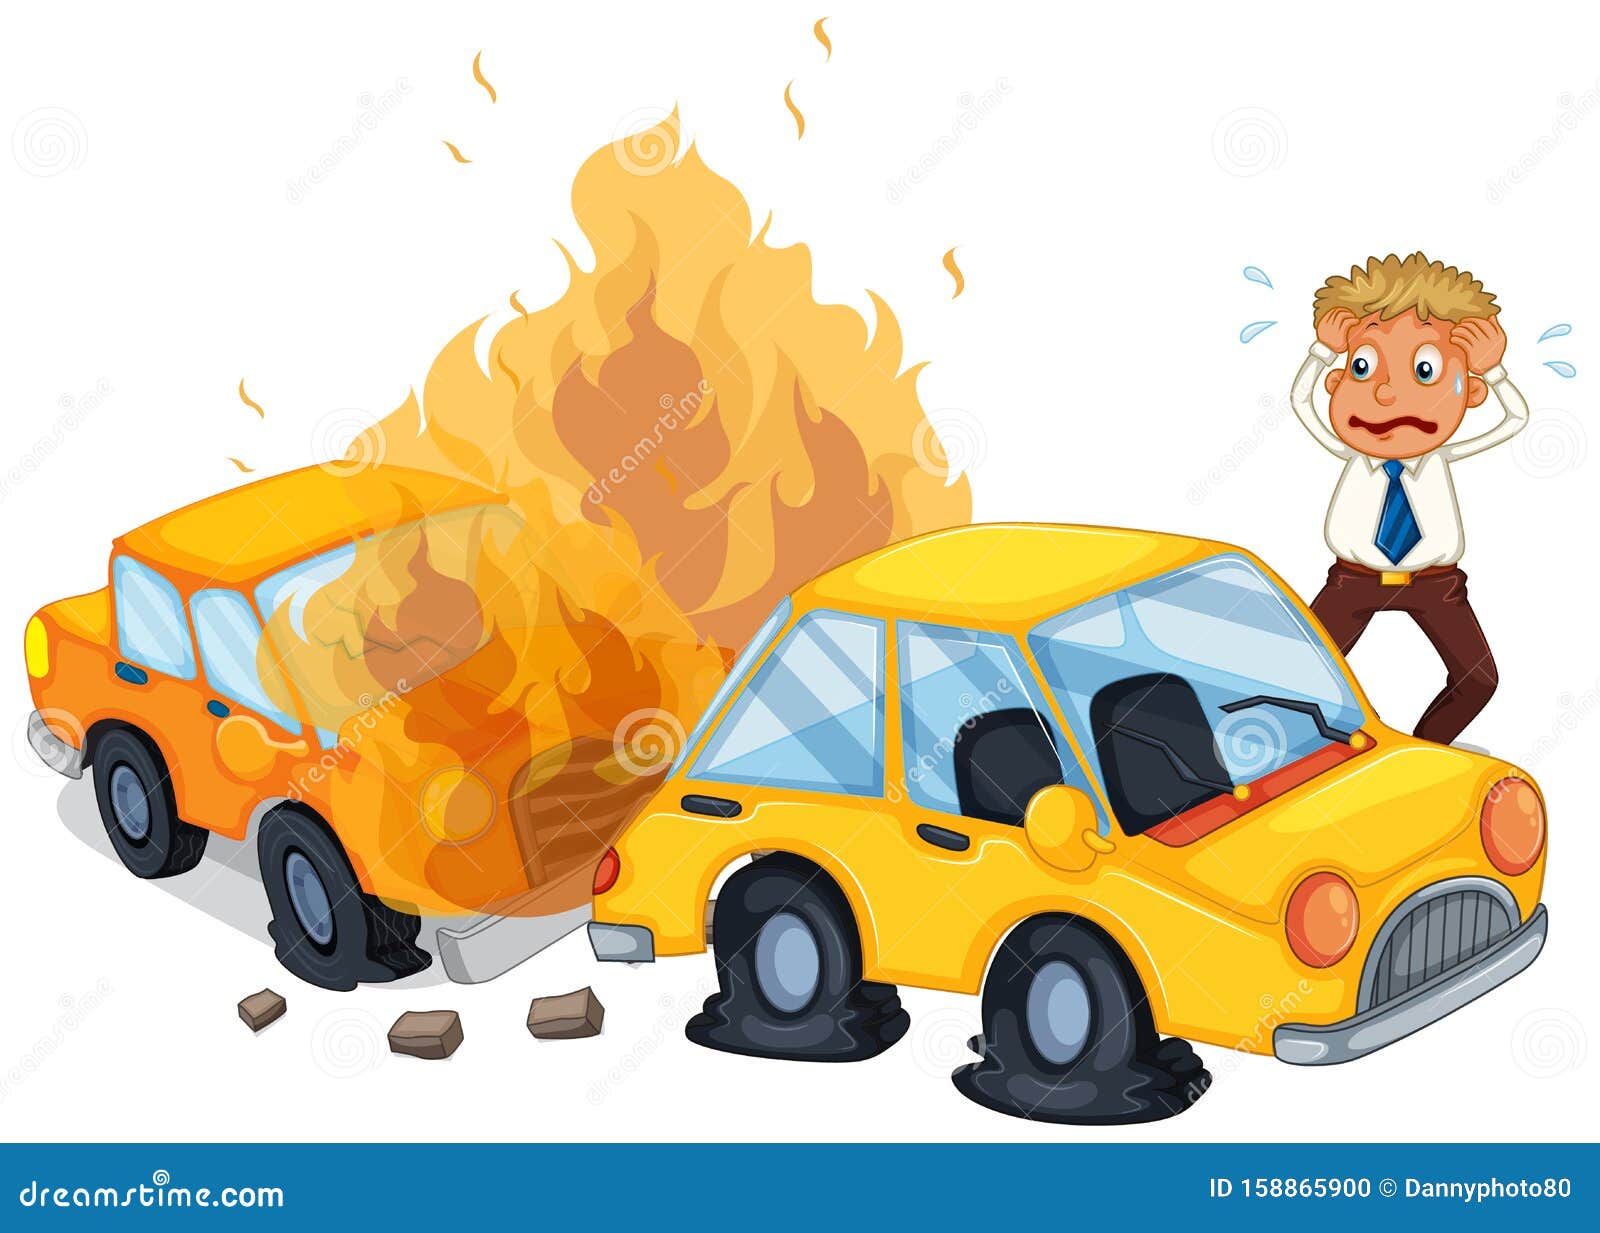 车着火的事故现场向量例证 插画包括有男性 艺术 背包 汽车 适应 照片 屏蔽 剪报